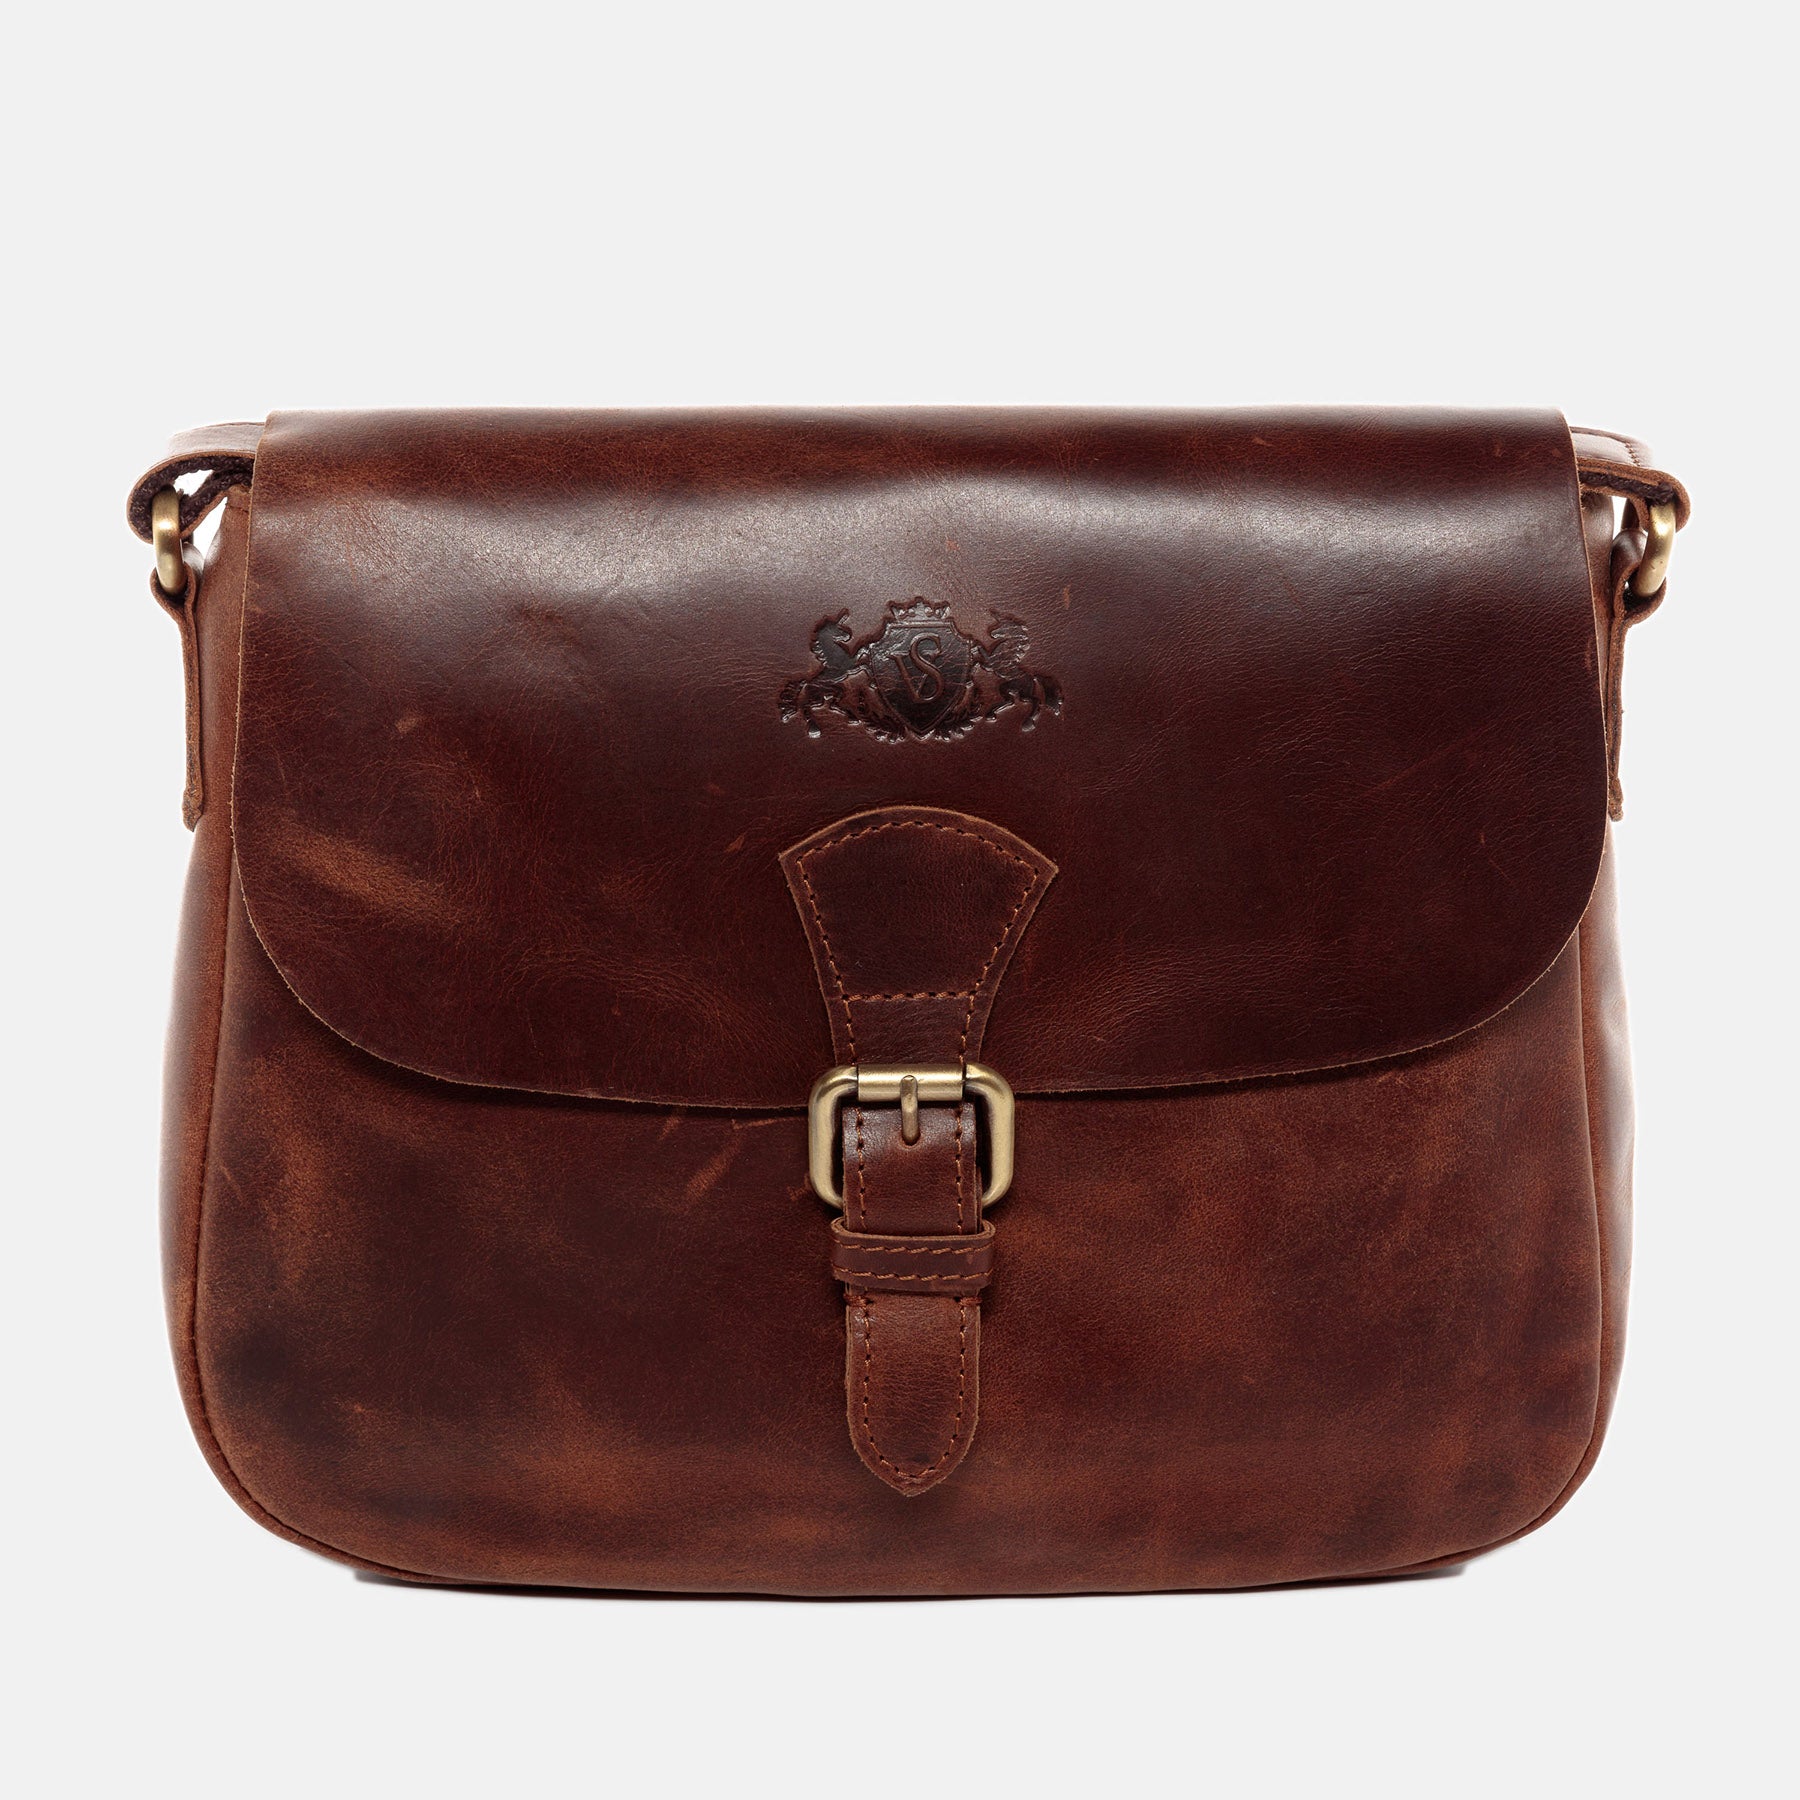 Shoulder bag YALE natural leather brown-cognac